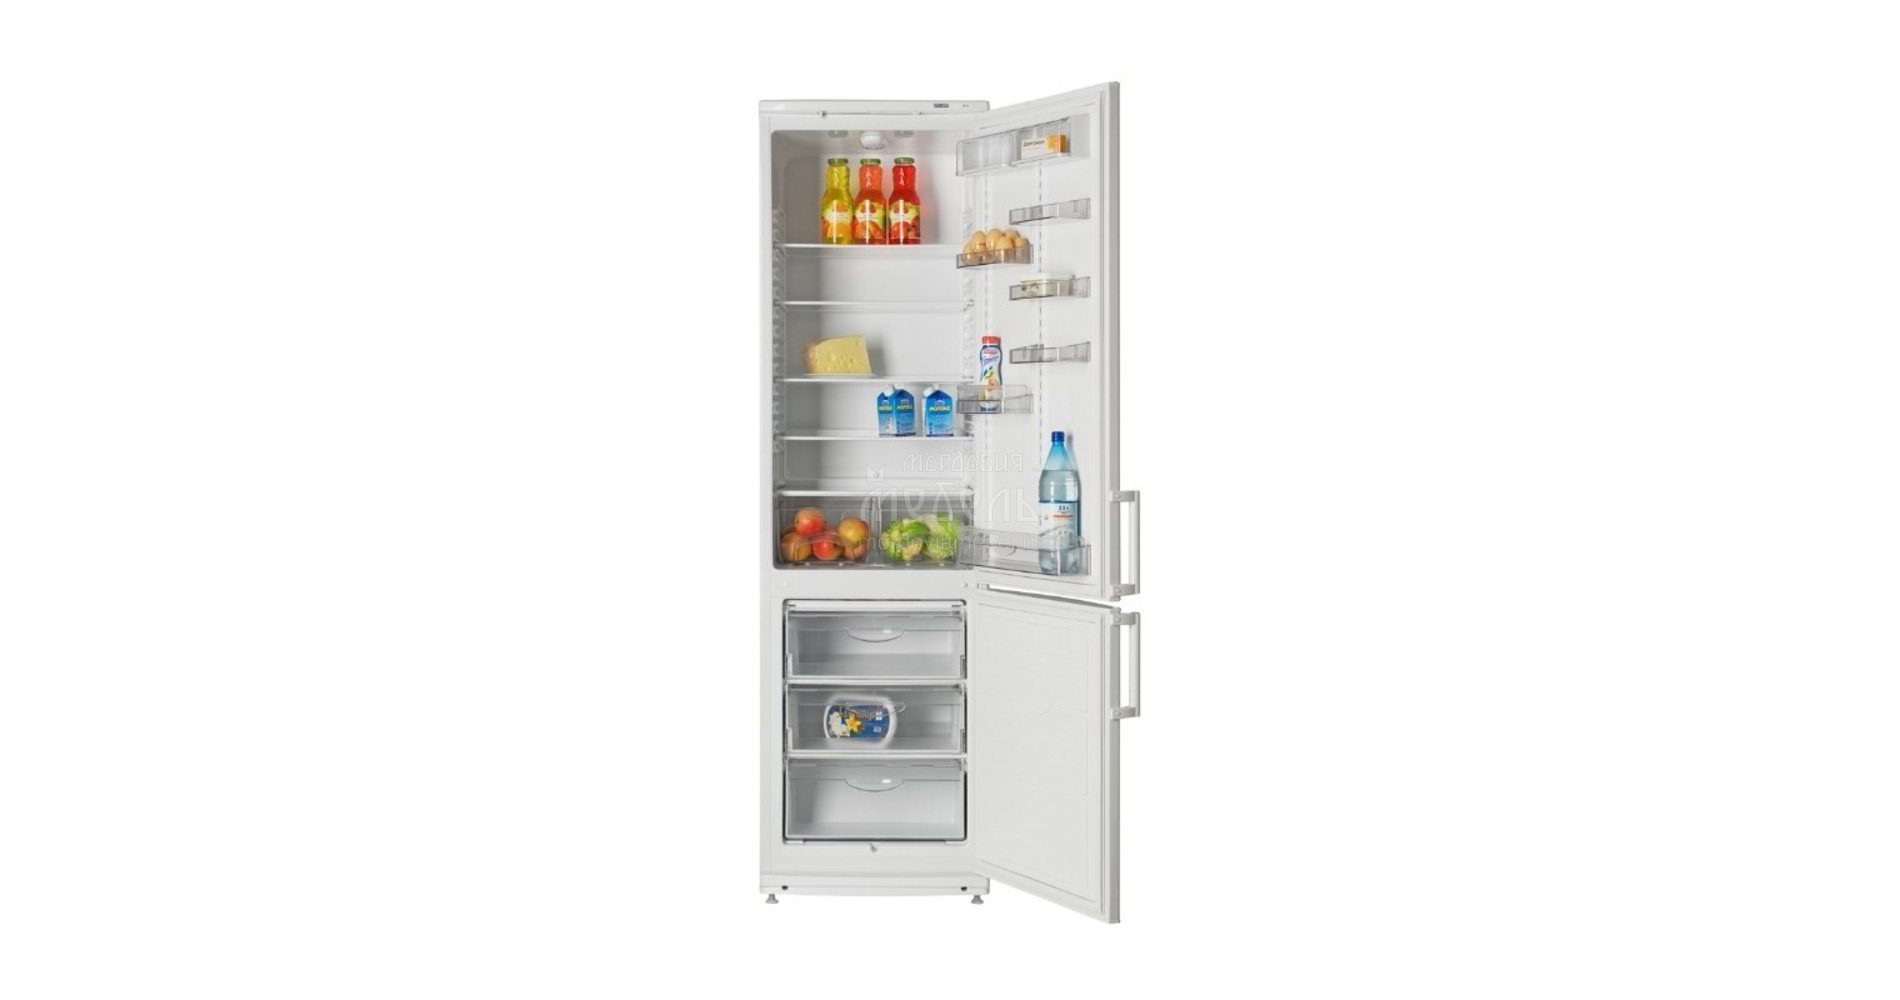 Васко ру холодильники. ATLANT хм 6025-031. Холодильник Атлант 4012-022. Холодильник Атлант хм 4012-022. Холодильник XM 6025-031 ATLANT.